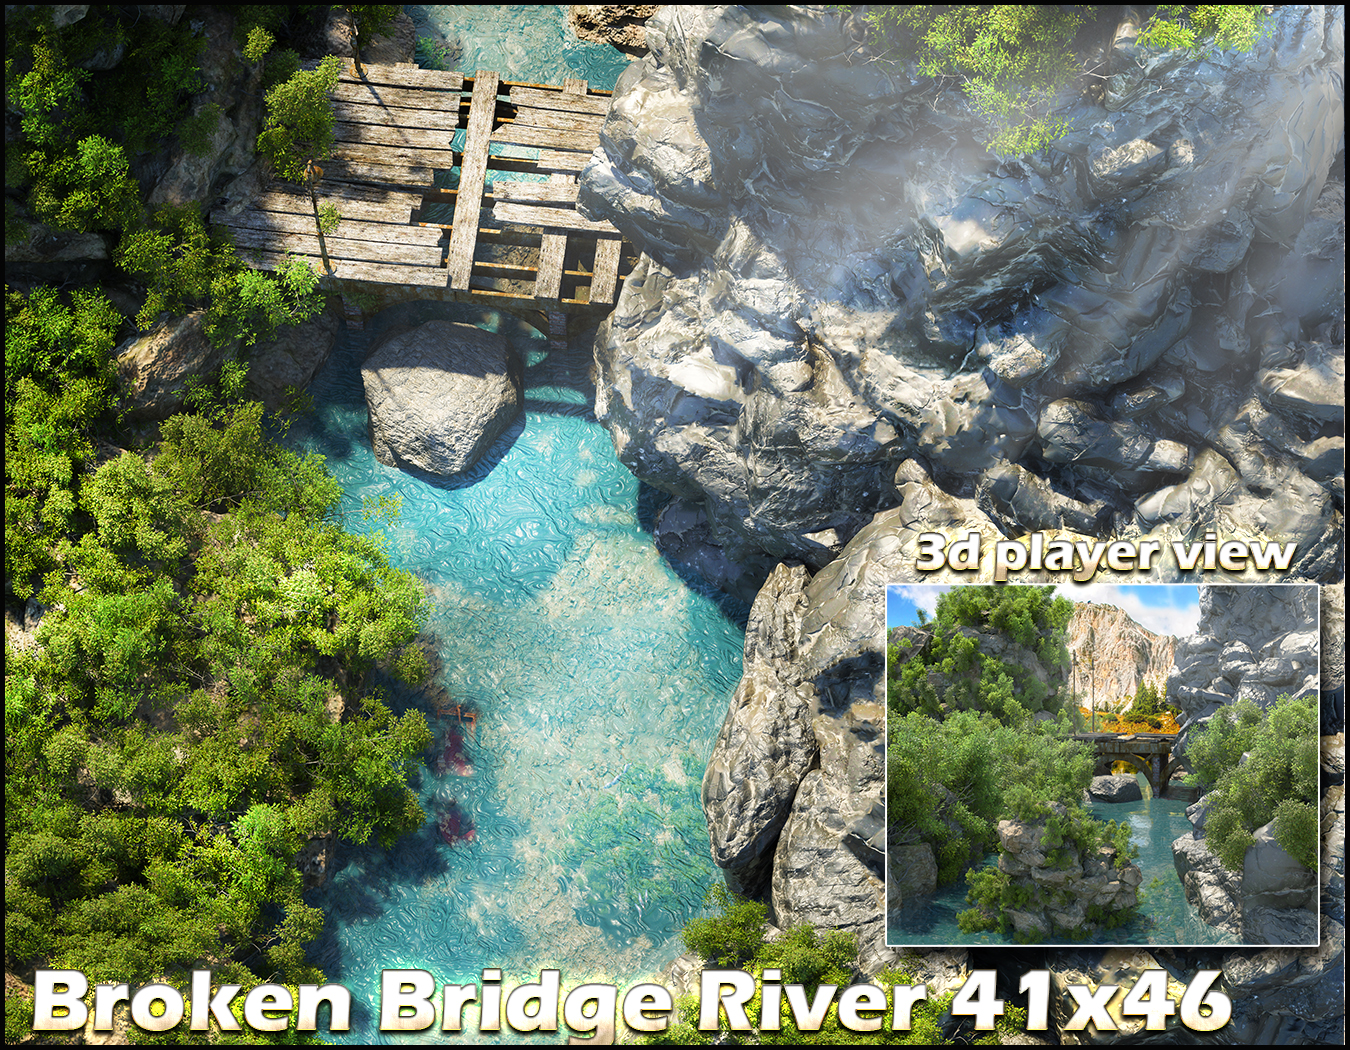 The Broken bridge River